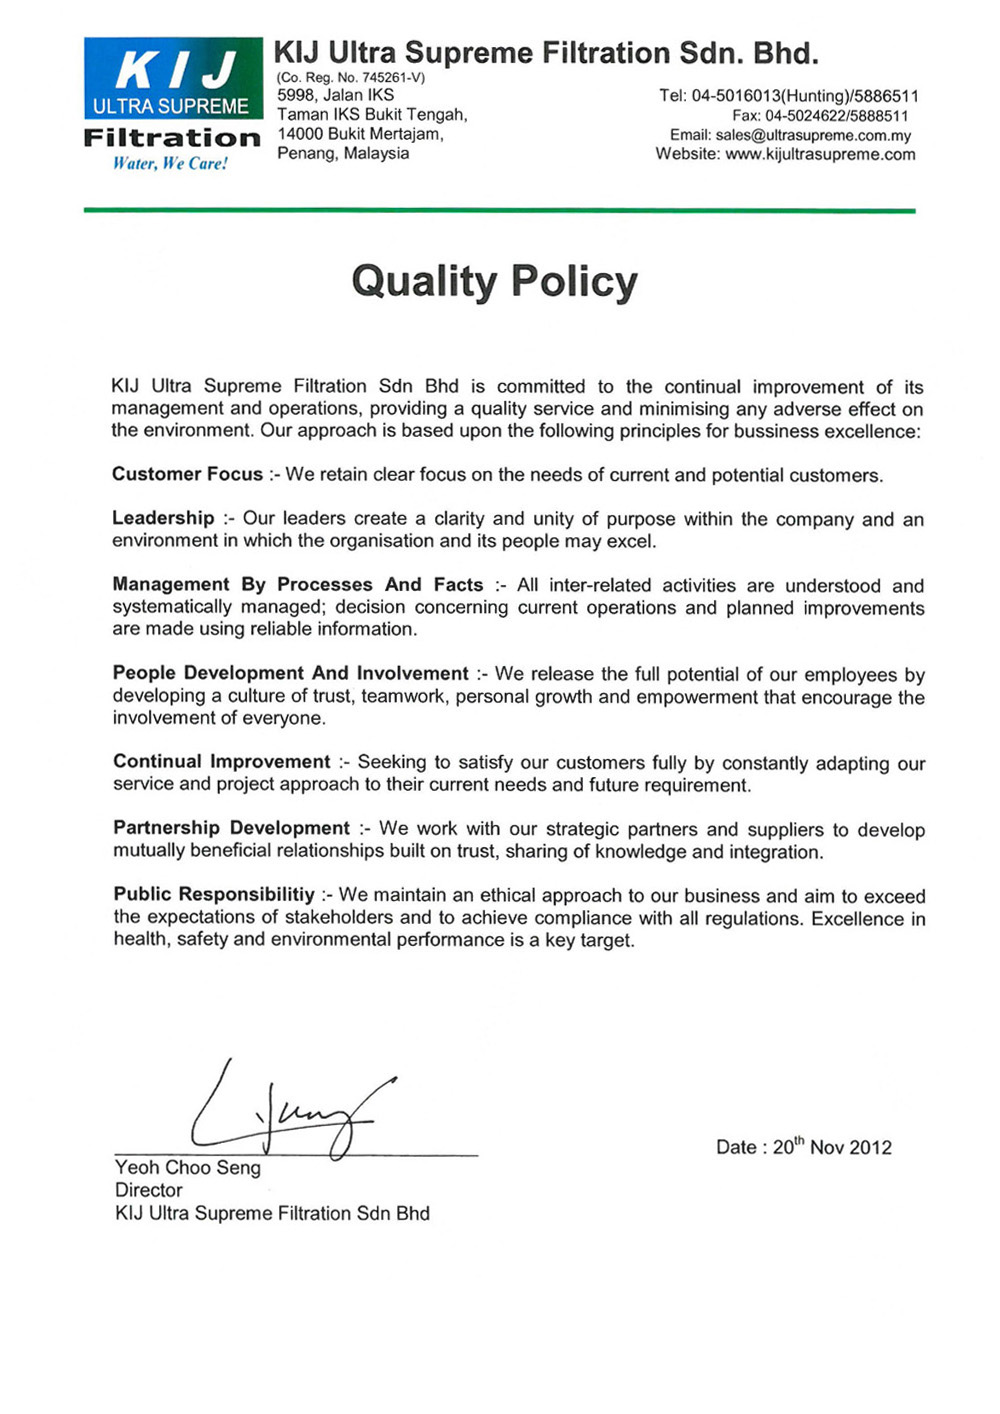 KIJ Quality Policy